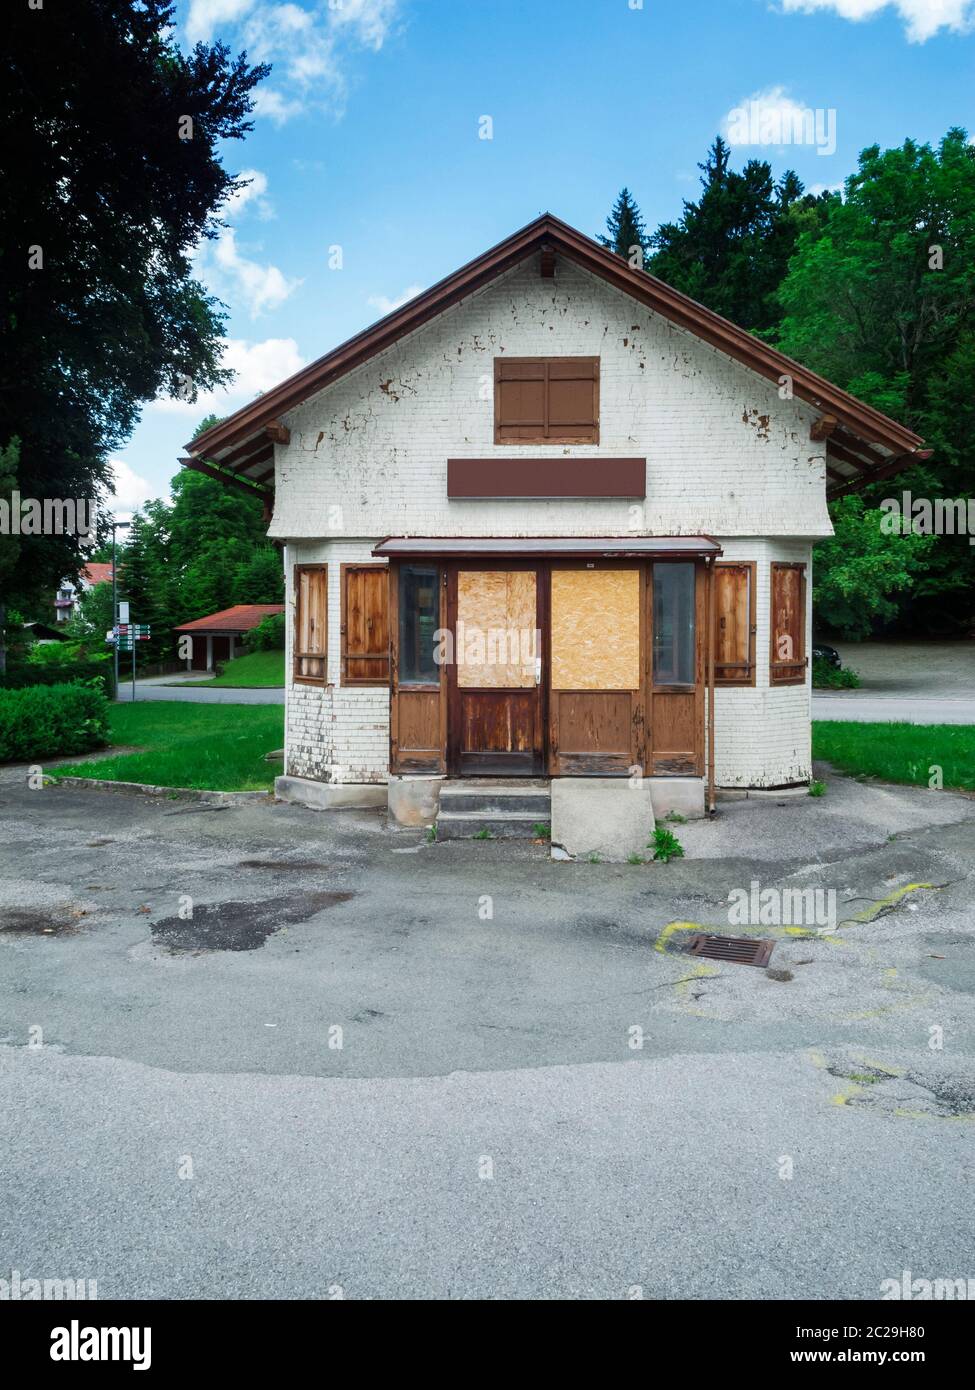 Frontale Gesamt-Ansicht eines mit Brettern und Holzplatten verschlossenen alten kleinen Bahnhofs-Kiosk in ländliche bayerischer Umgebung mit Bäumen un Stock Photo